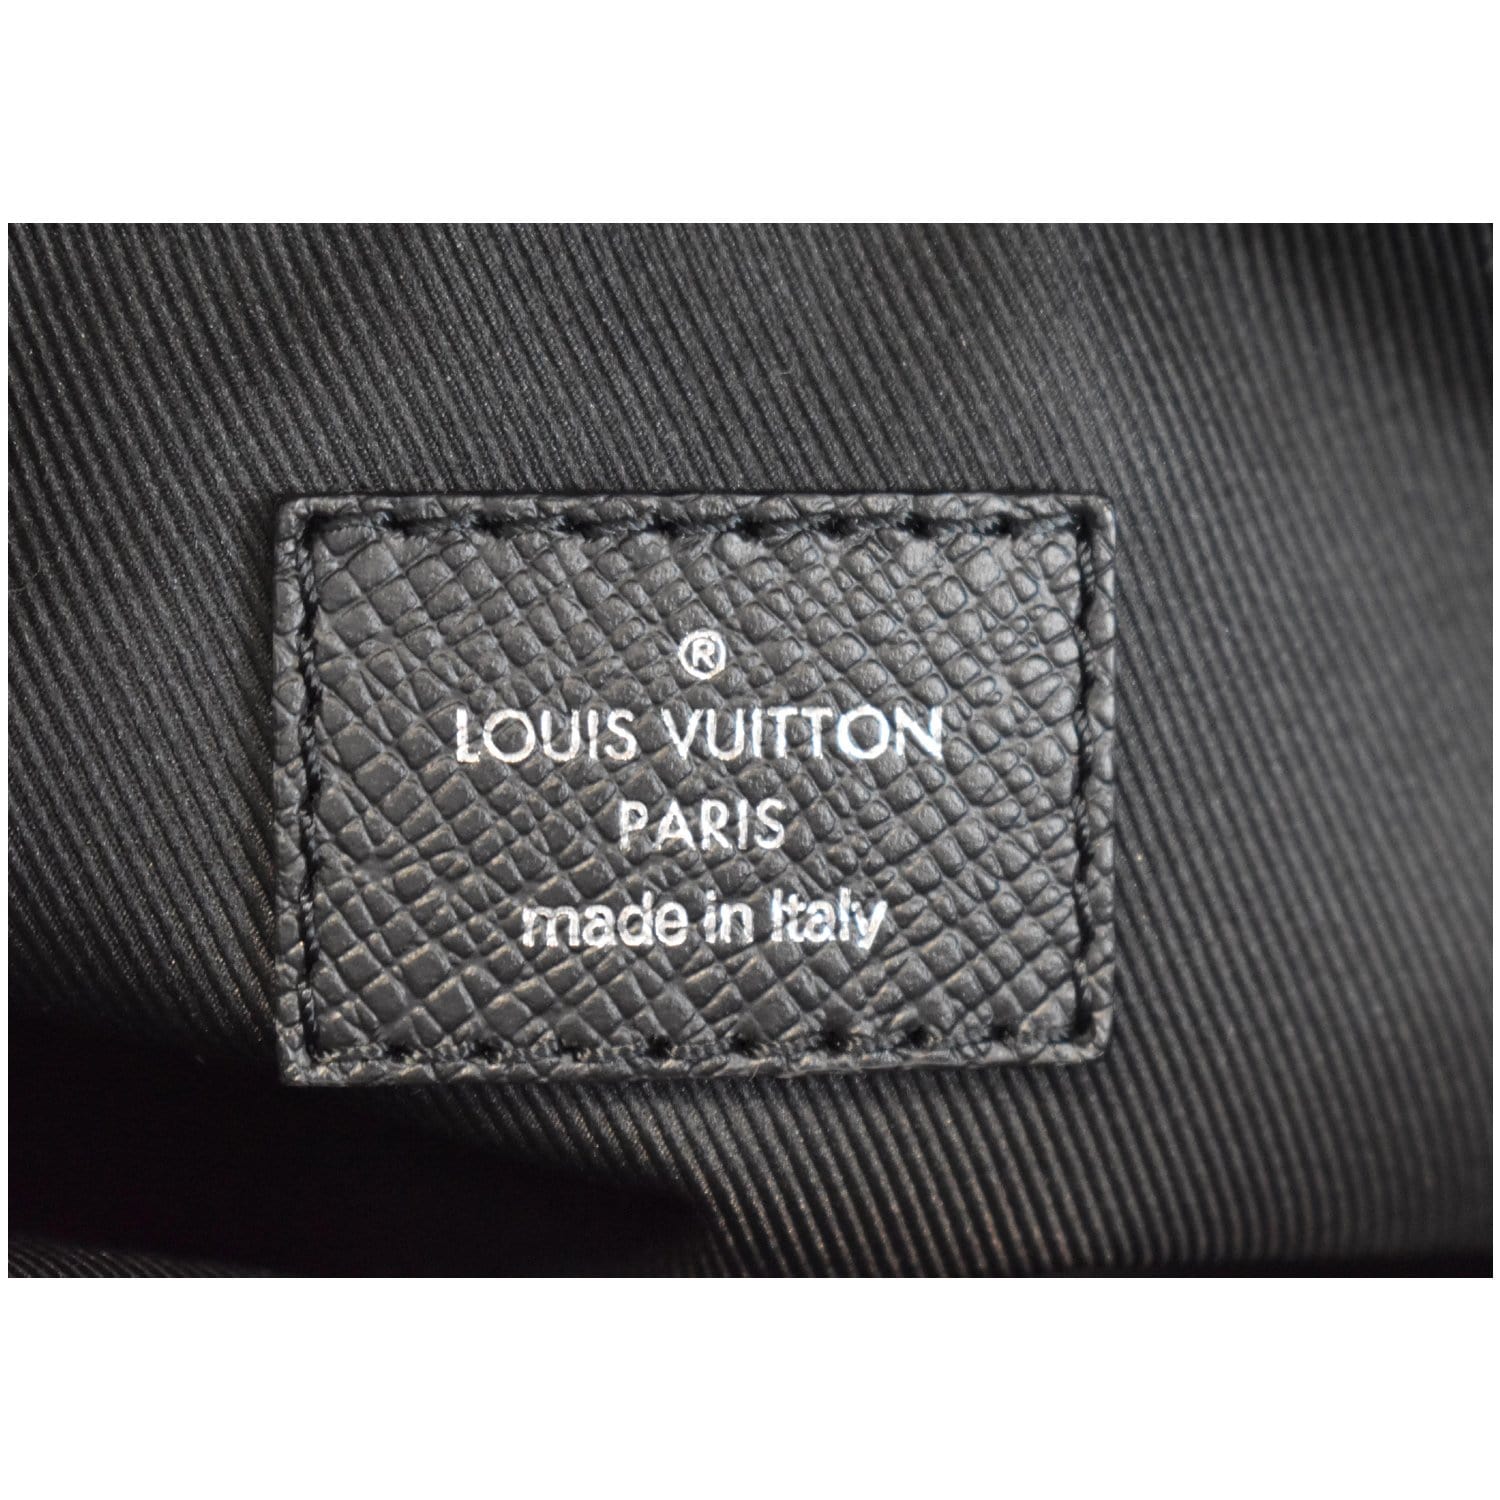 Louis Vuitton® Outdoor Messenger Cobalt. Size